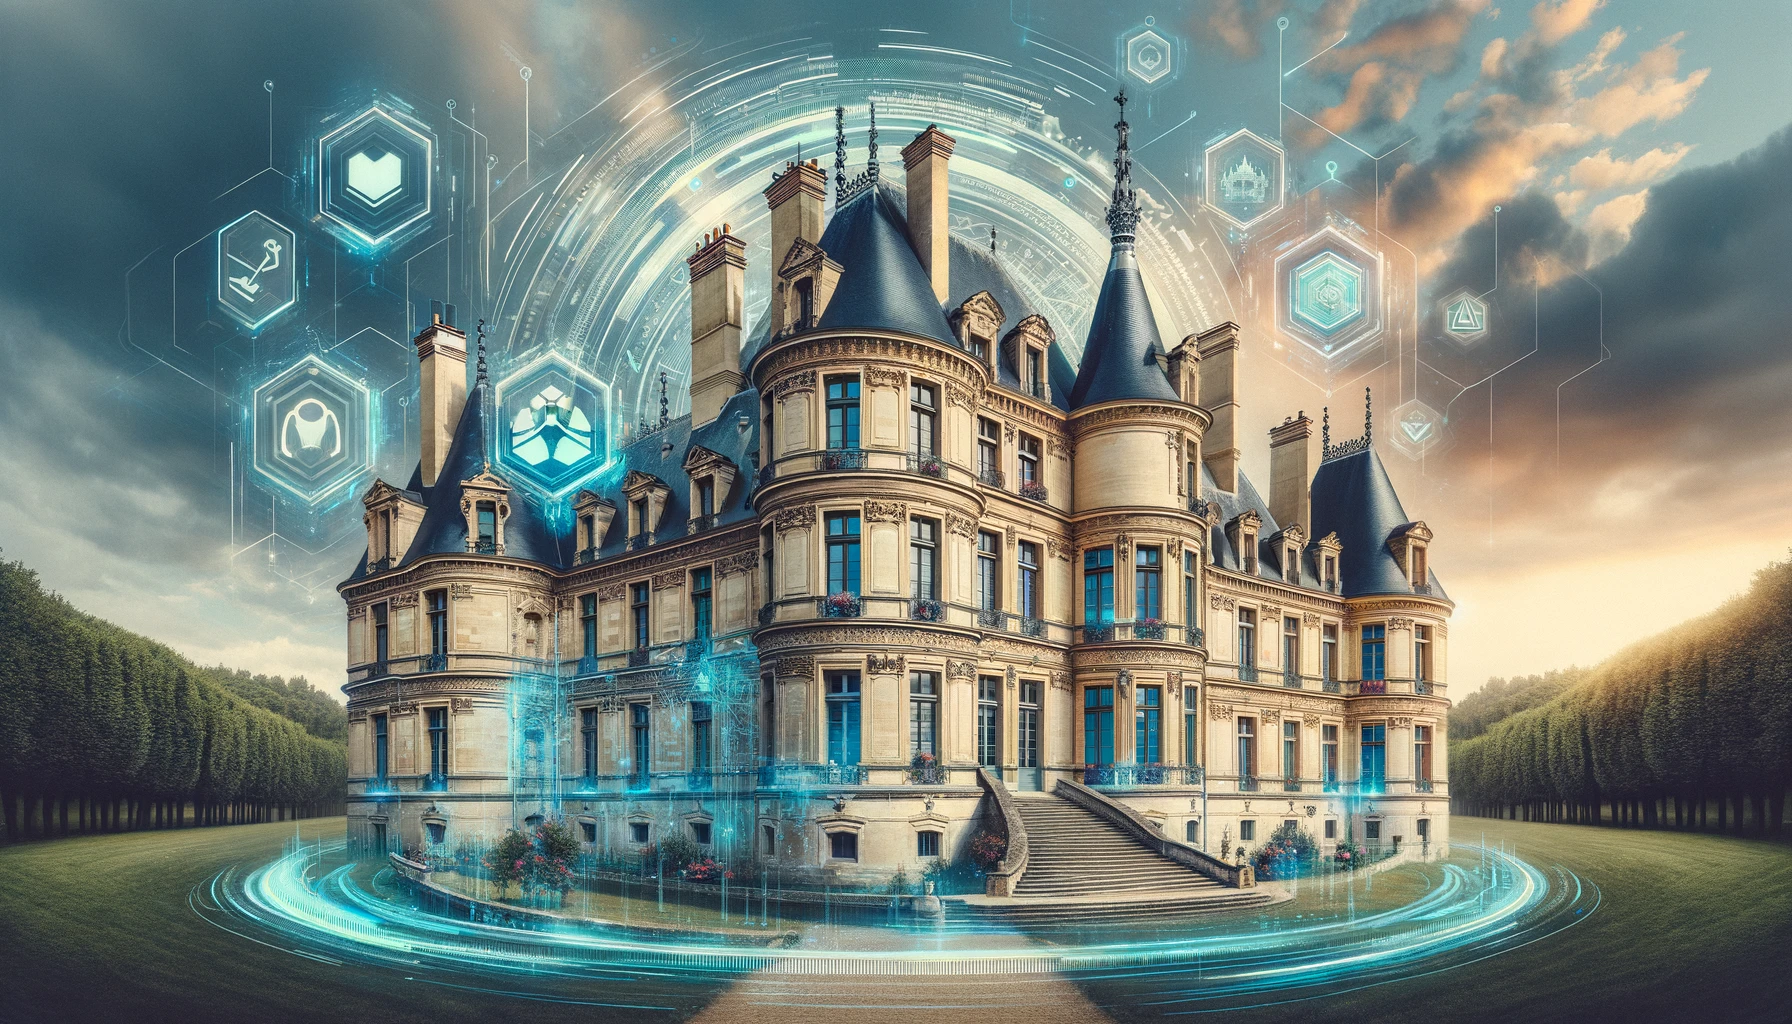 Château français classique intégrant des éléments numériques et futuristes, symbolisant la fusion du patrimoine historique avec la technologie moderne.